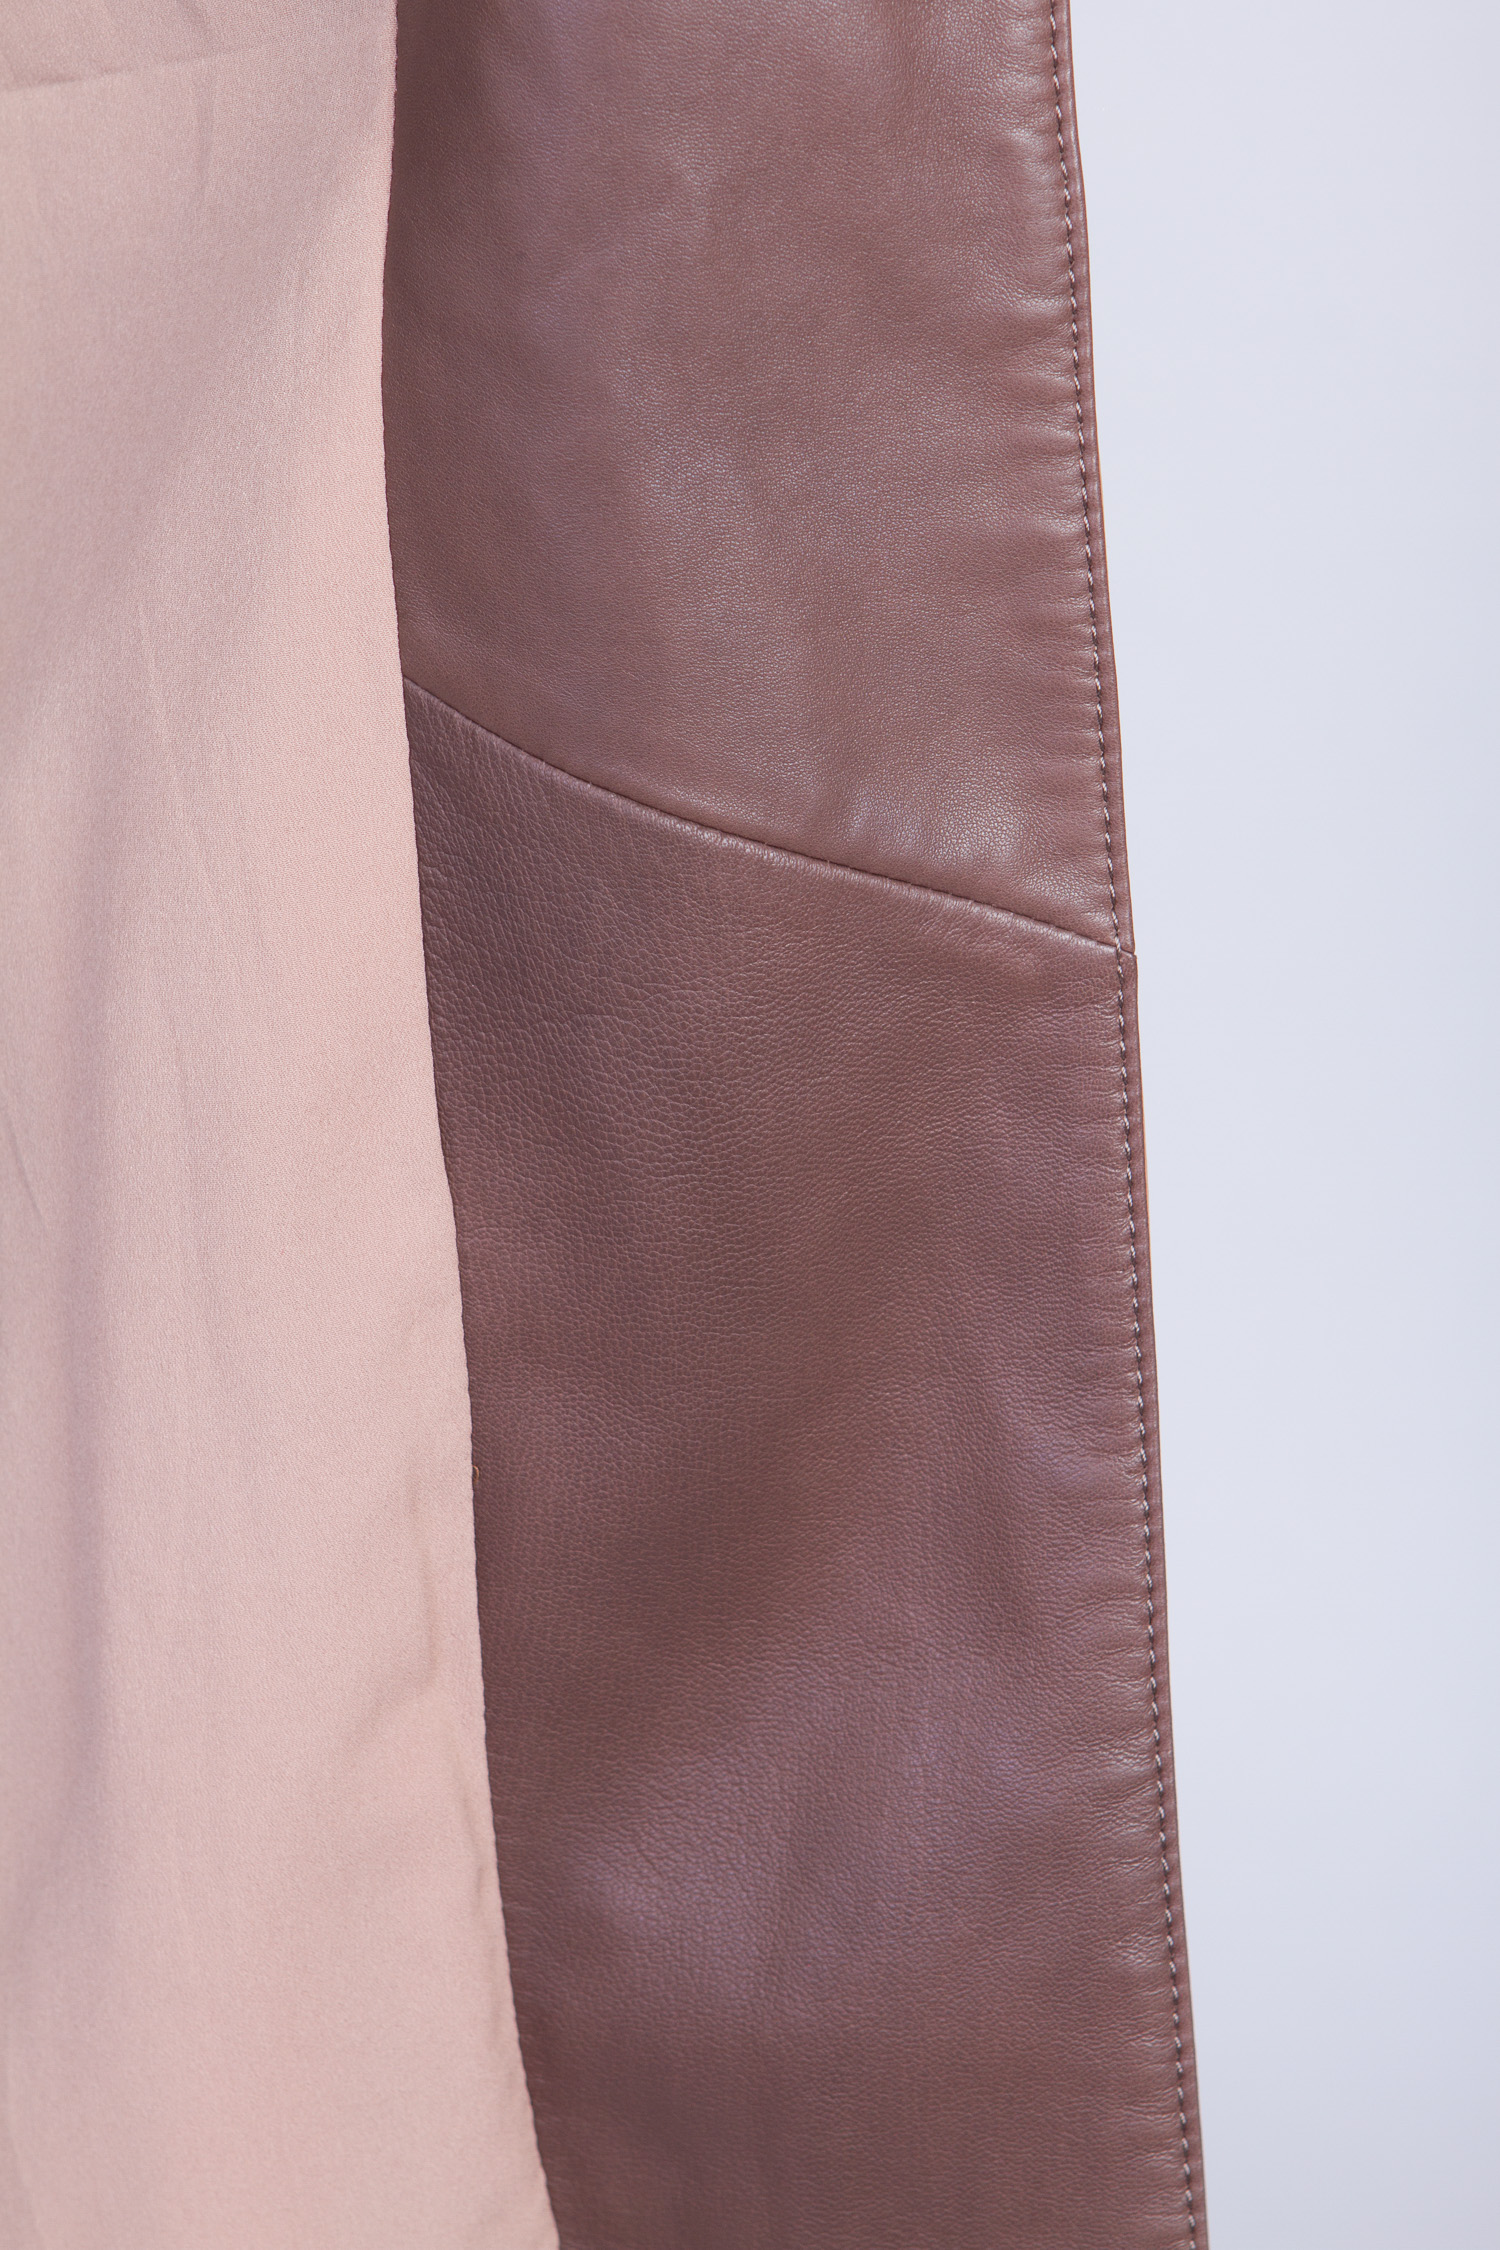 Женское кожаное пальто из натуральной кожи с воротником, без отделки